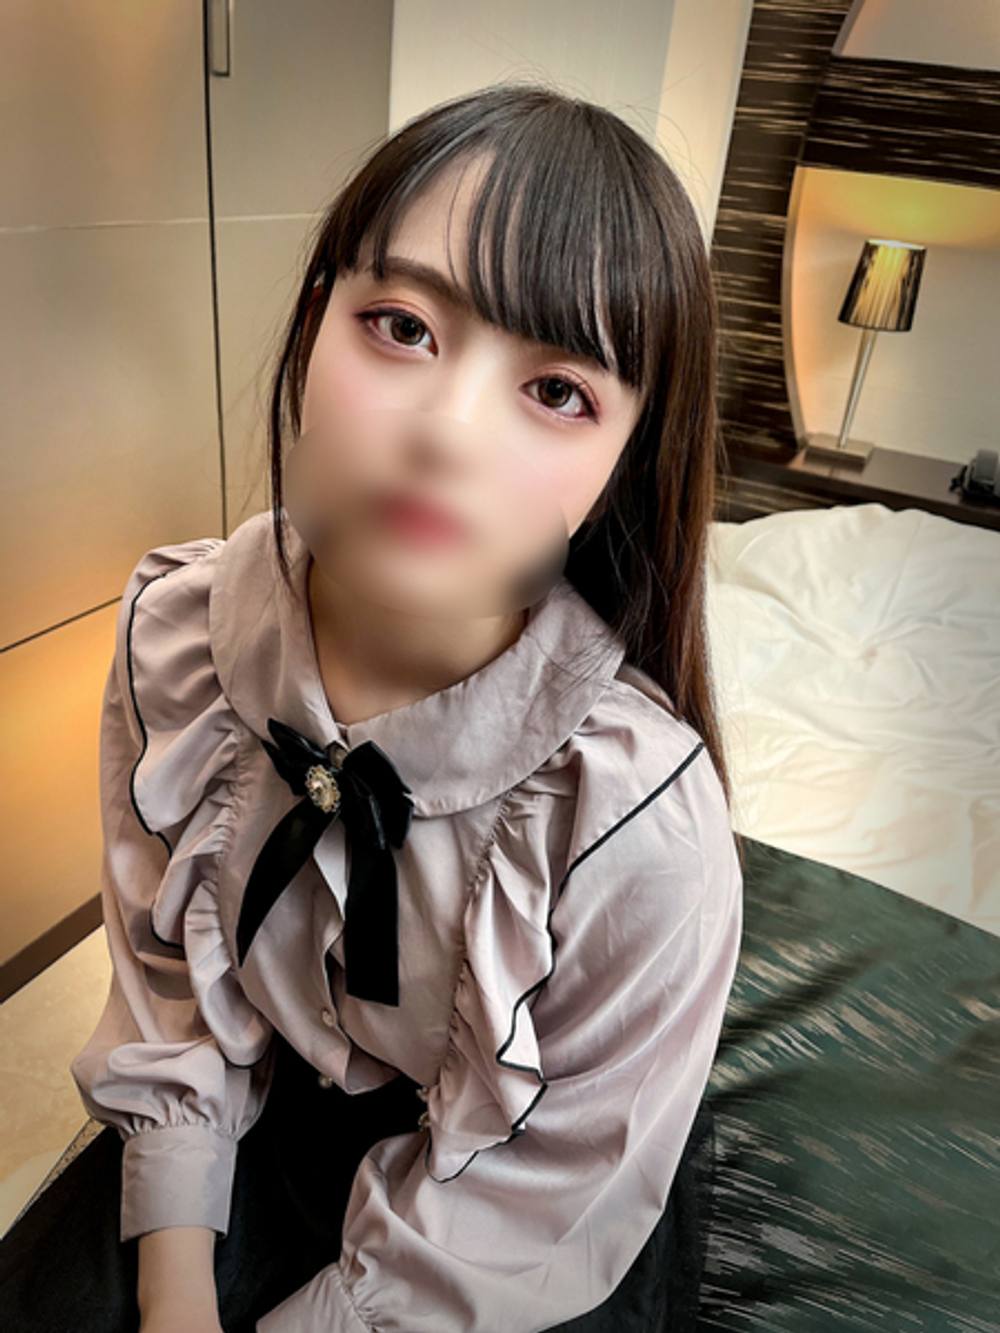 【週末限定販売】歌舞伎町の怪しいホテルから直送された問題映像。Eしてもらったおじさんの顔も見ないローテンション激塩対応地雷女子の大人を舐めたクソ態度